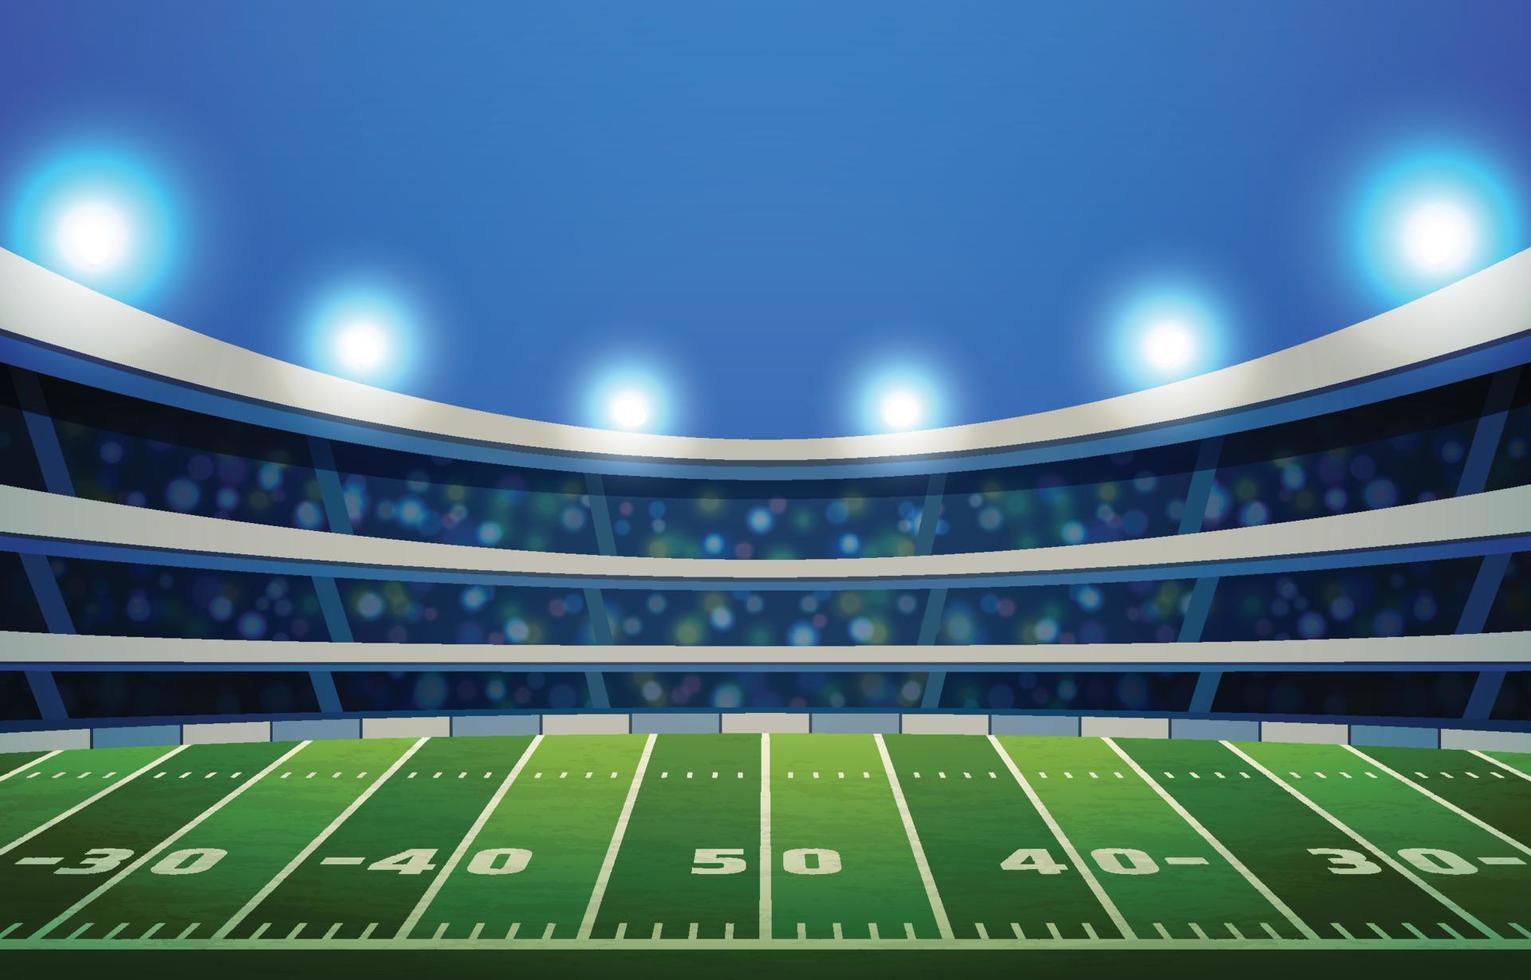 Super Bowl Stadium Background vector